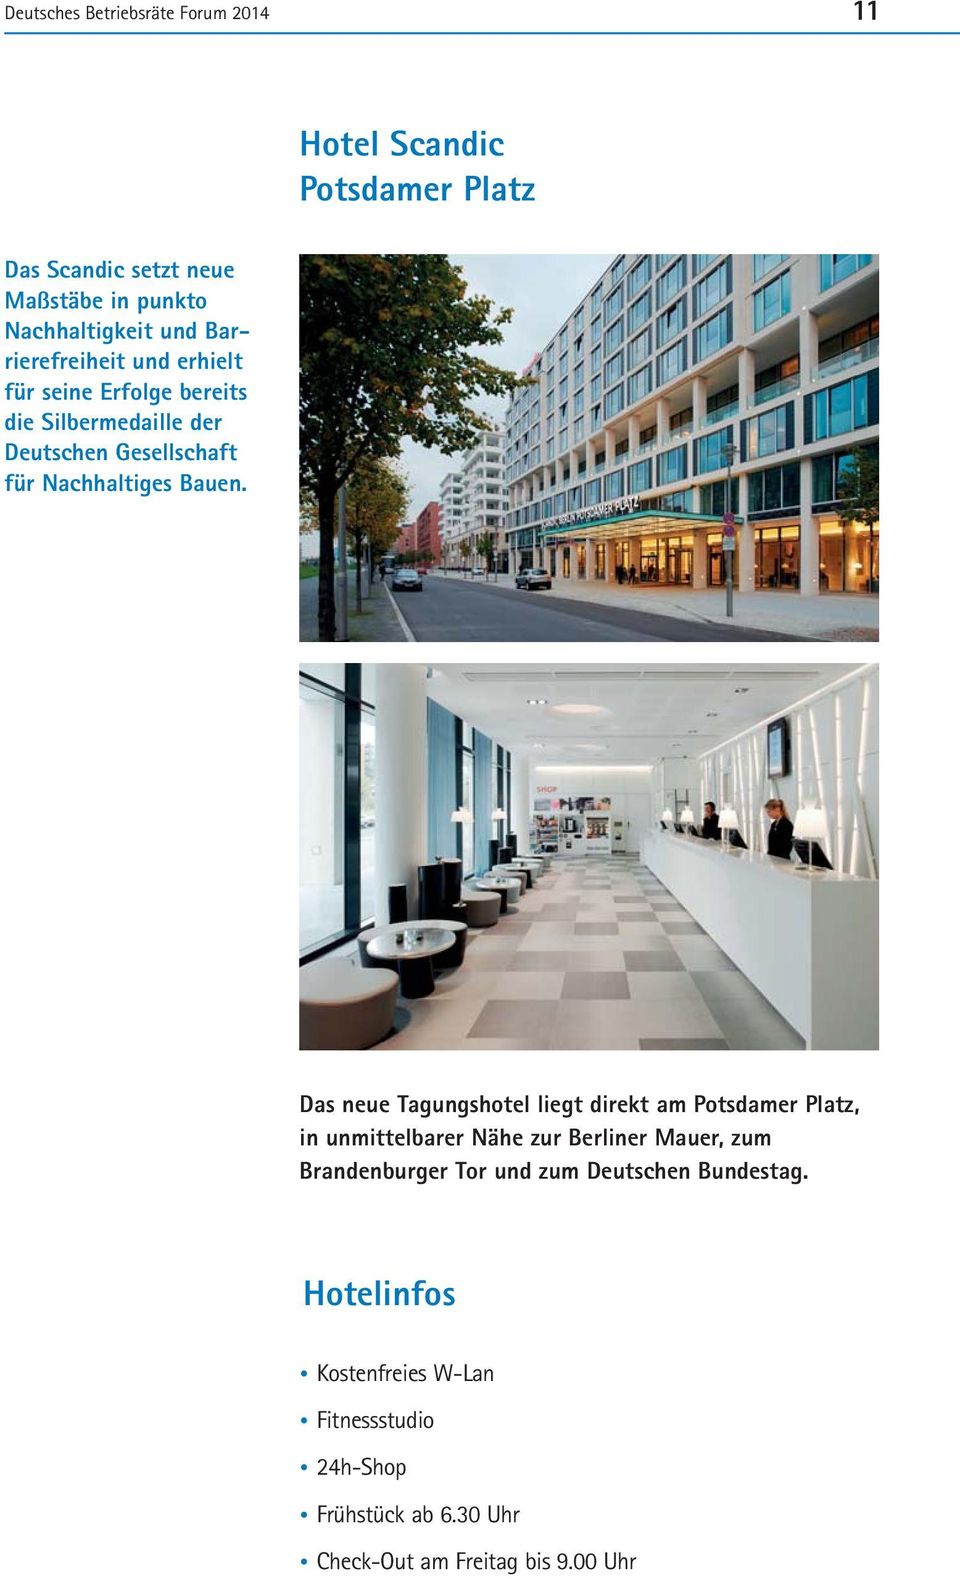 Das neue Tagungshotel liegt direkt am Potsdamer Platz, in unmittelbarer Nähe zur Berliner Mauer, zum Brandenburger Tor und zum